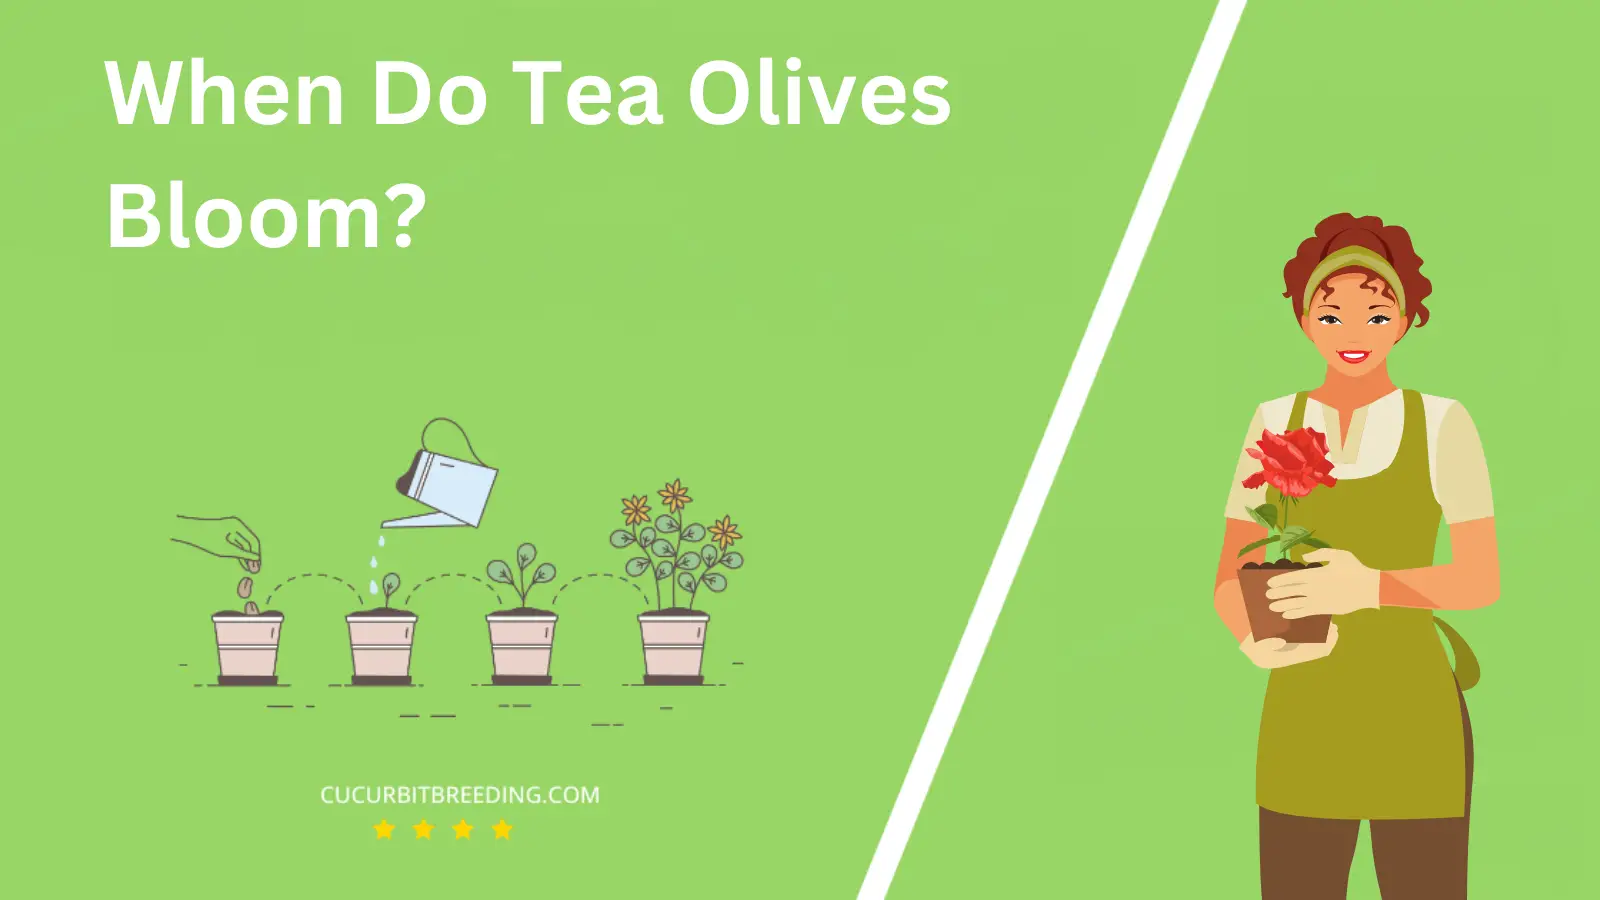 When Do Tea Olives Bloom?